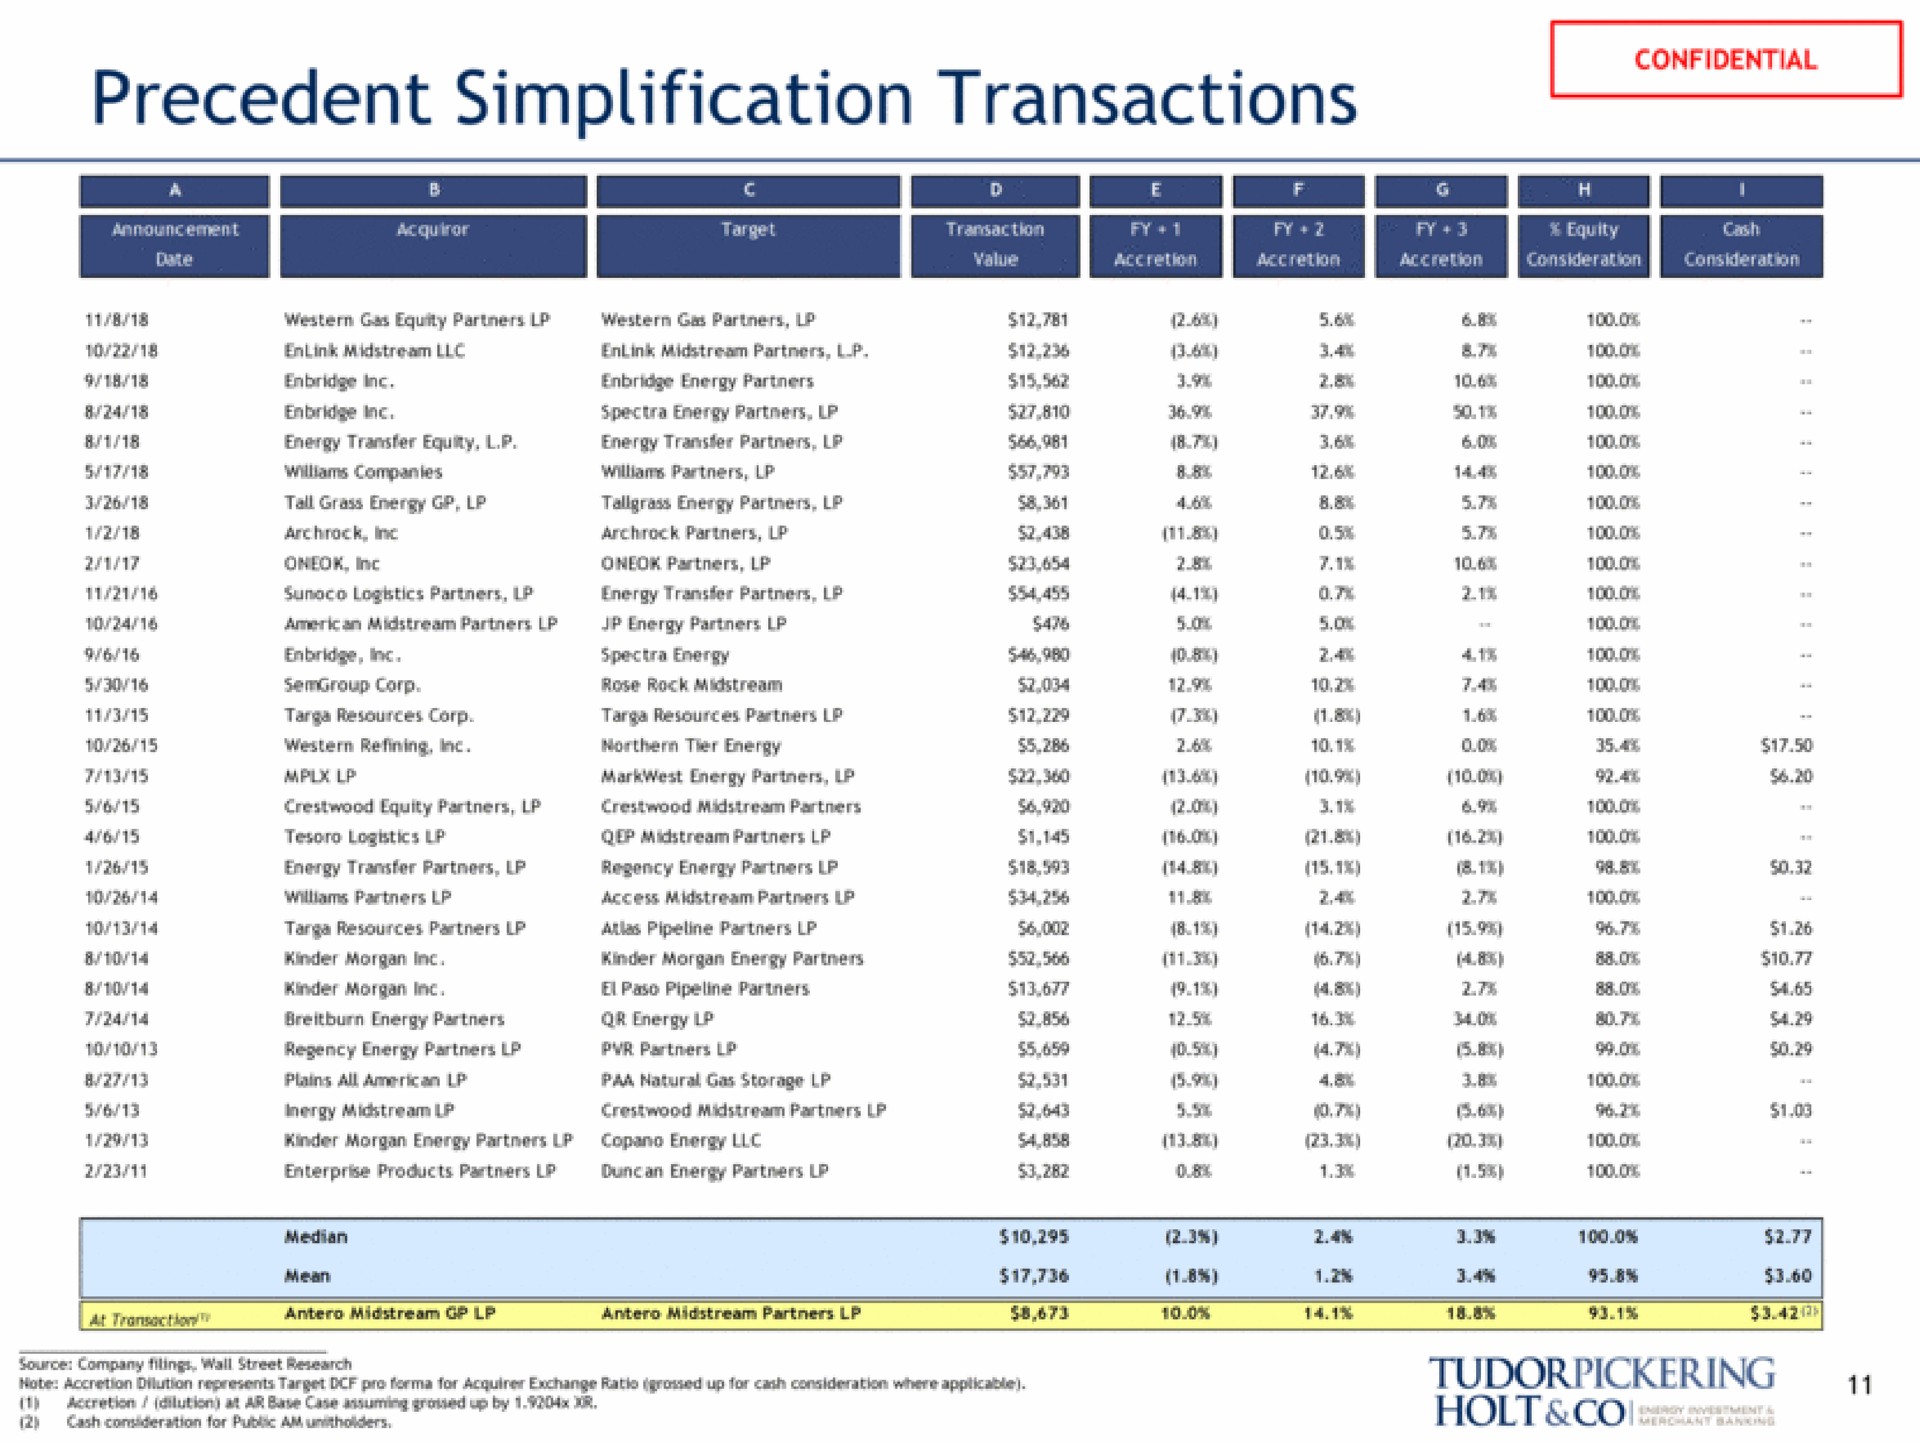 precedent simplification transactions holt | Tudor, Pickering, Holt & Co